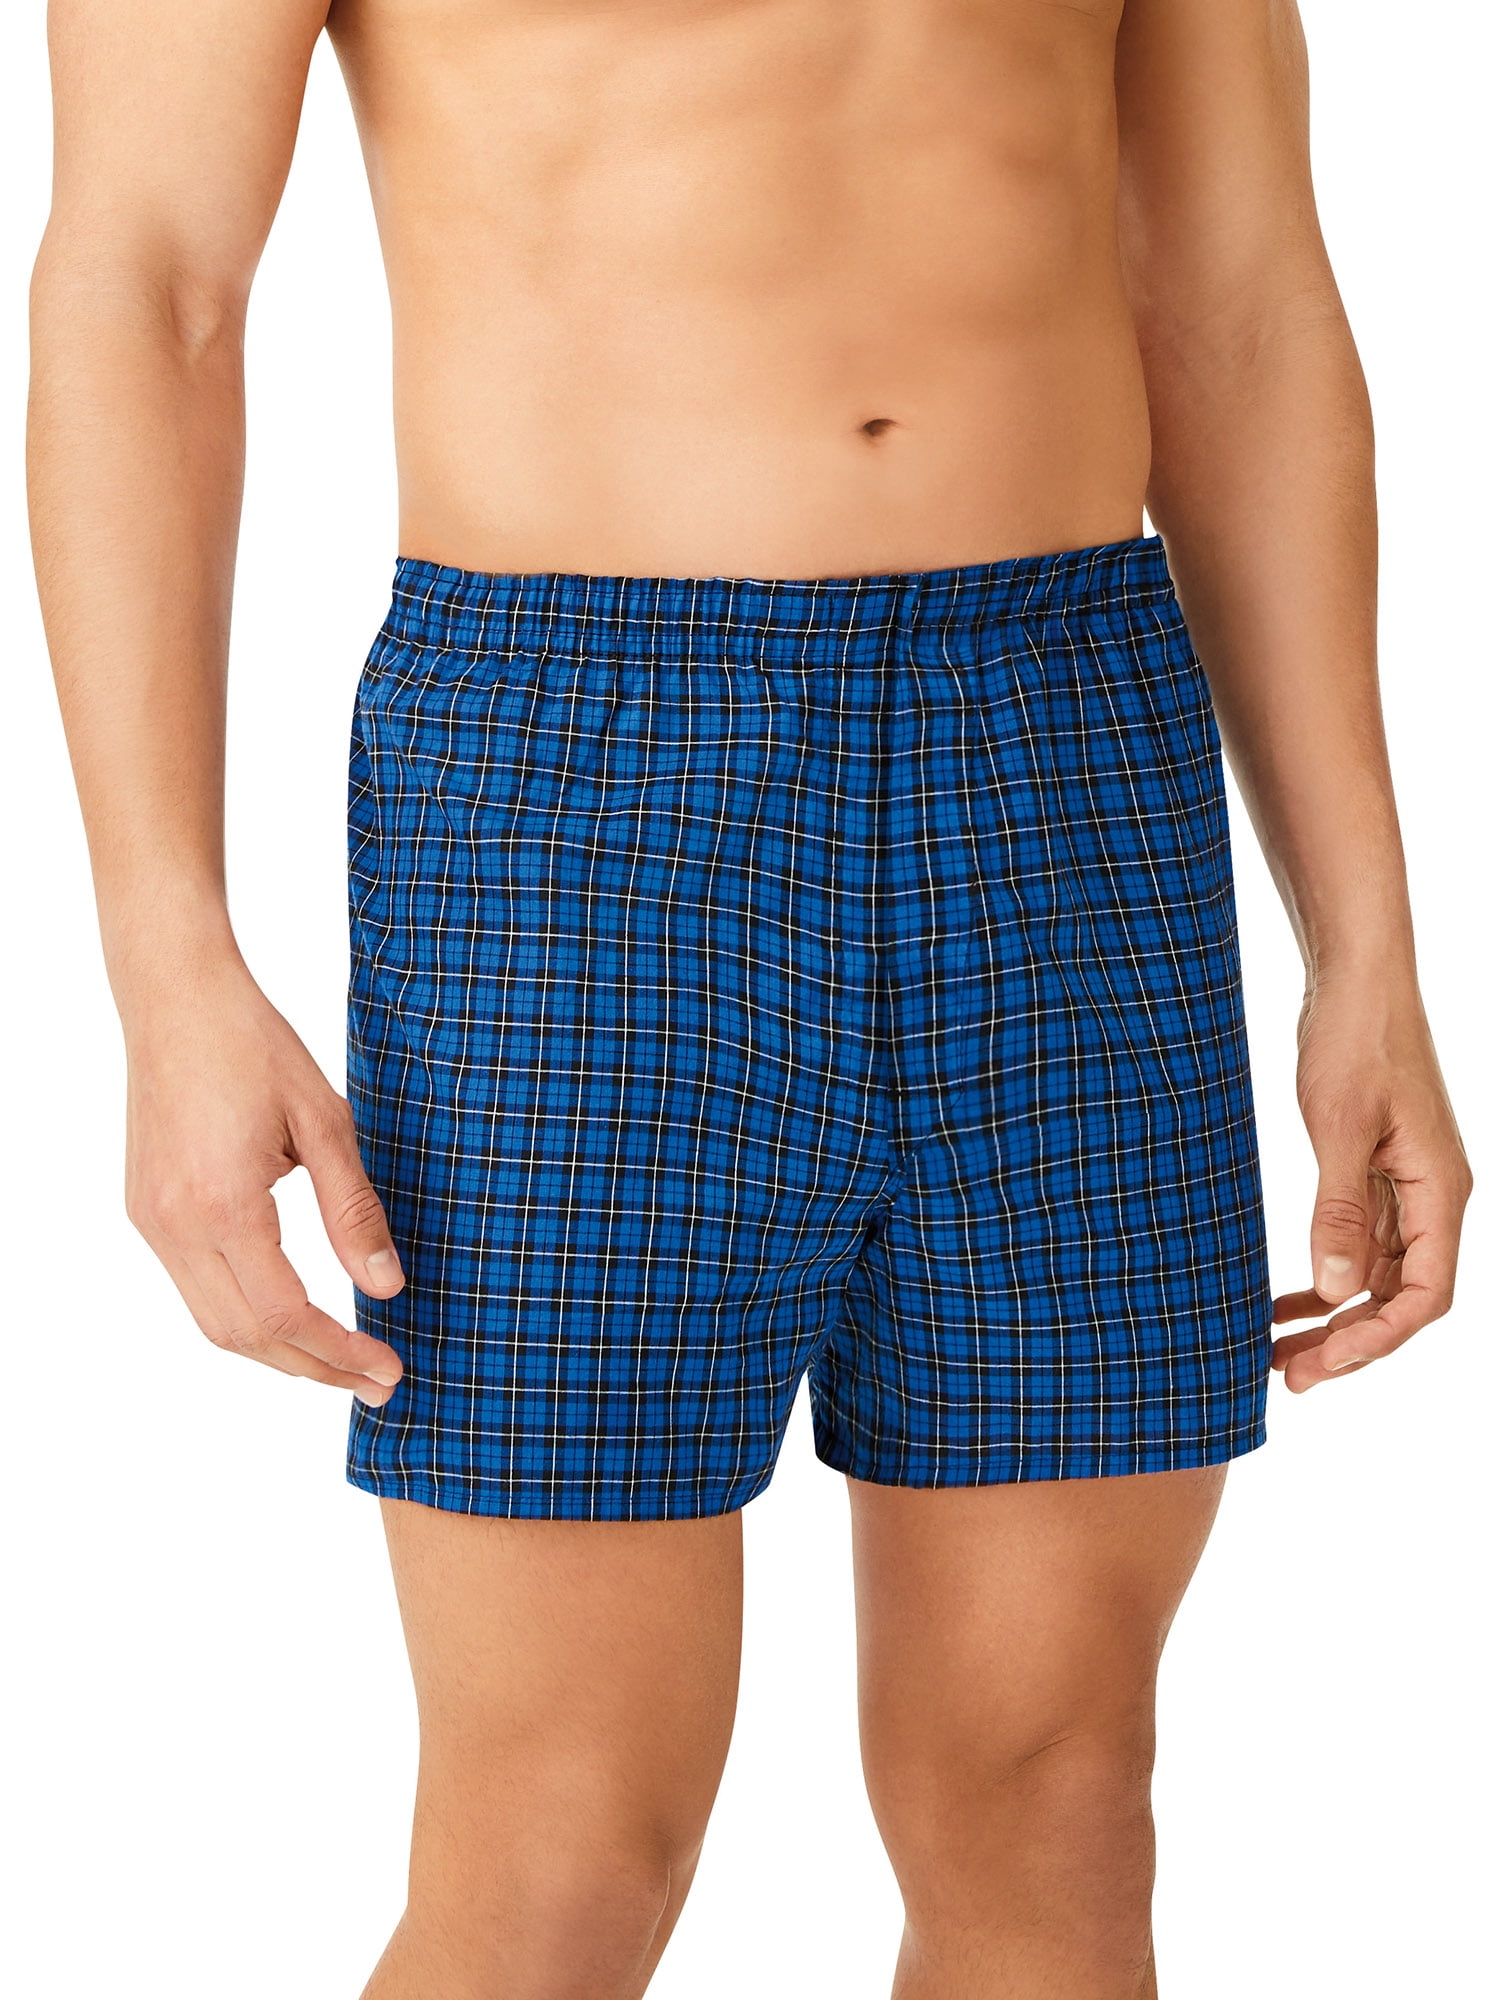 6 Pack Mens Premium Boxers 100% Cotton Underwear Trunk Plaid Shorts Size S~3XL 